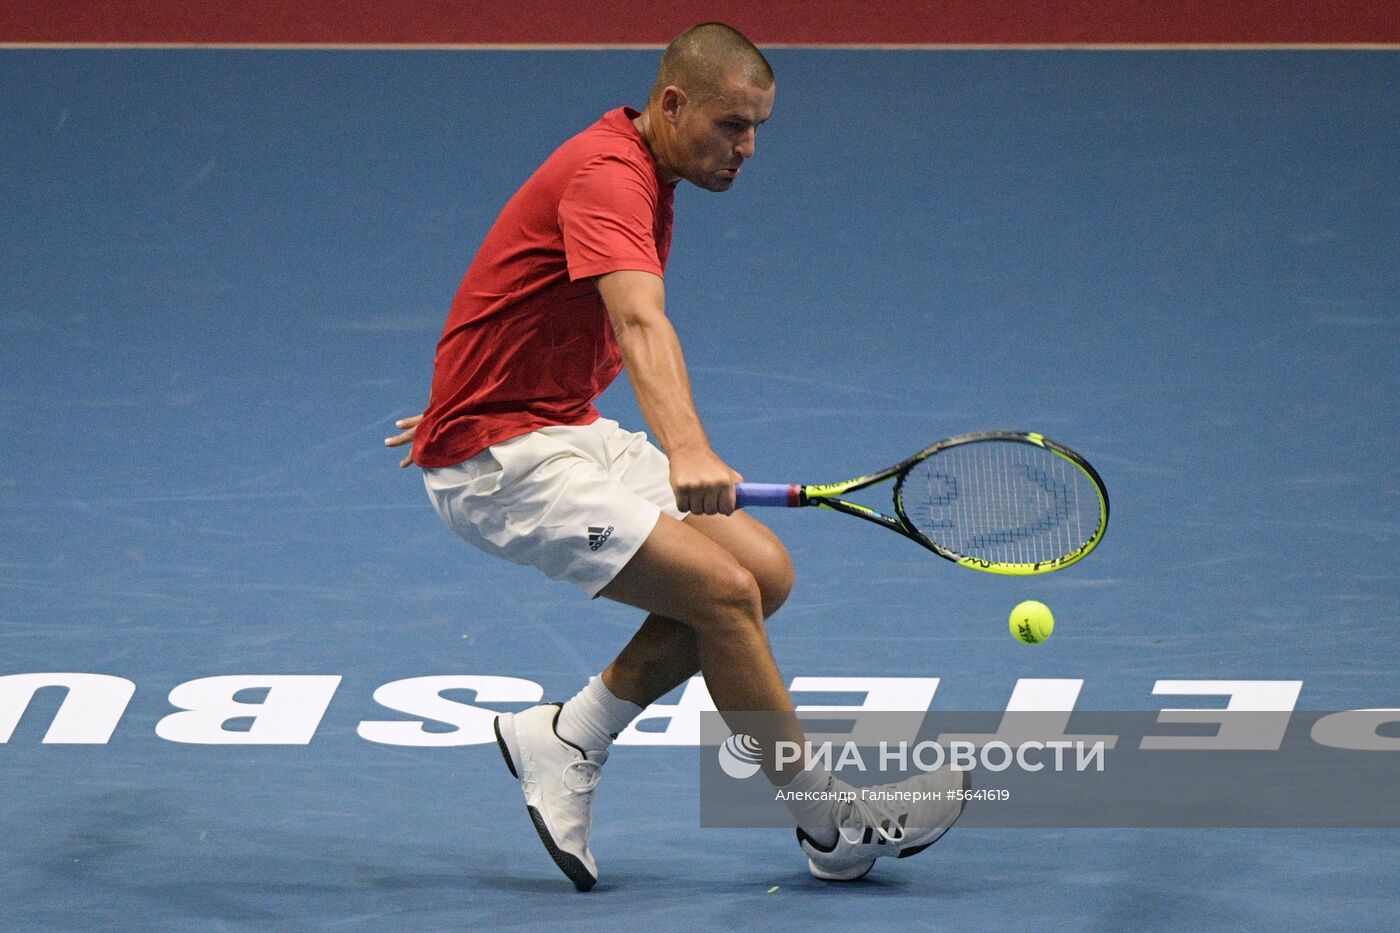 Теннис. St. Petersburg Open 2018